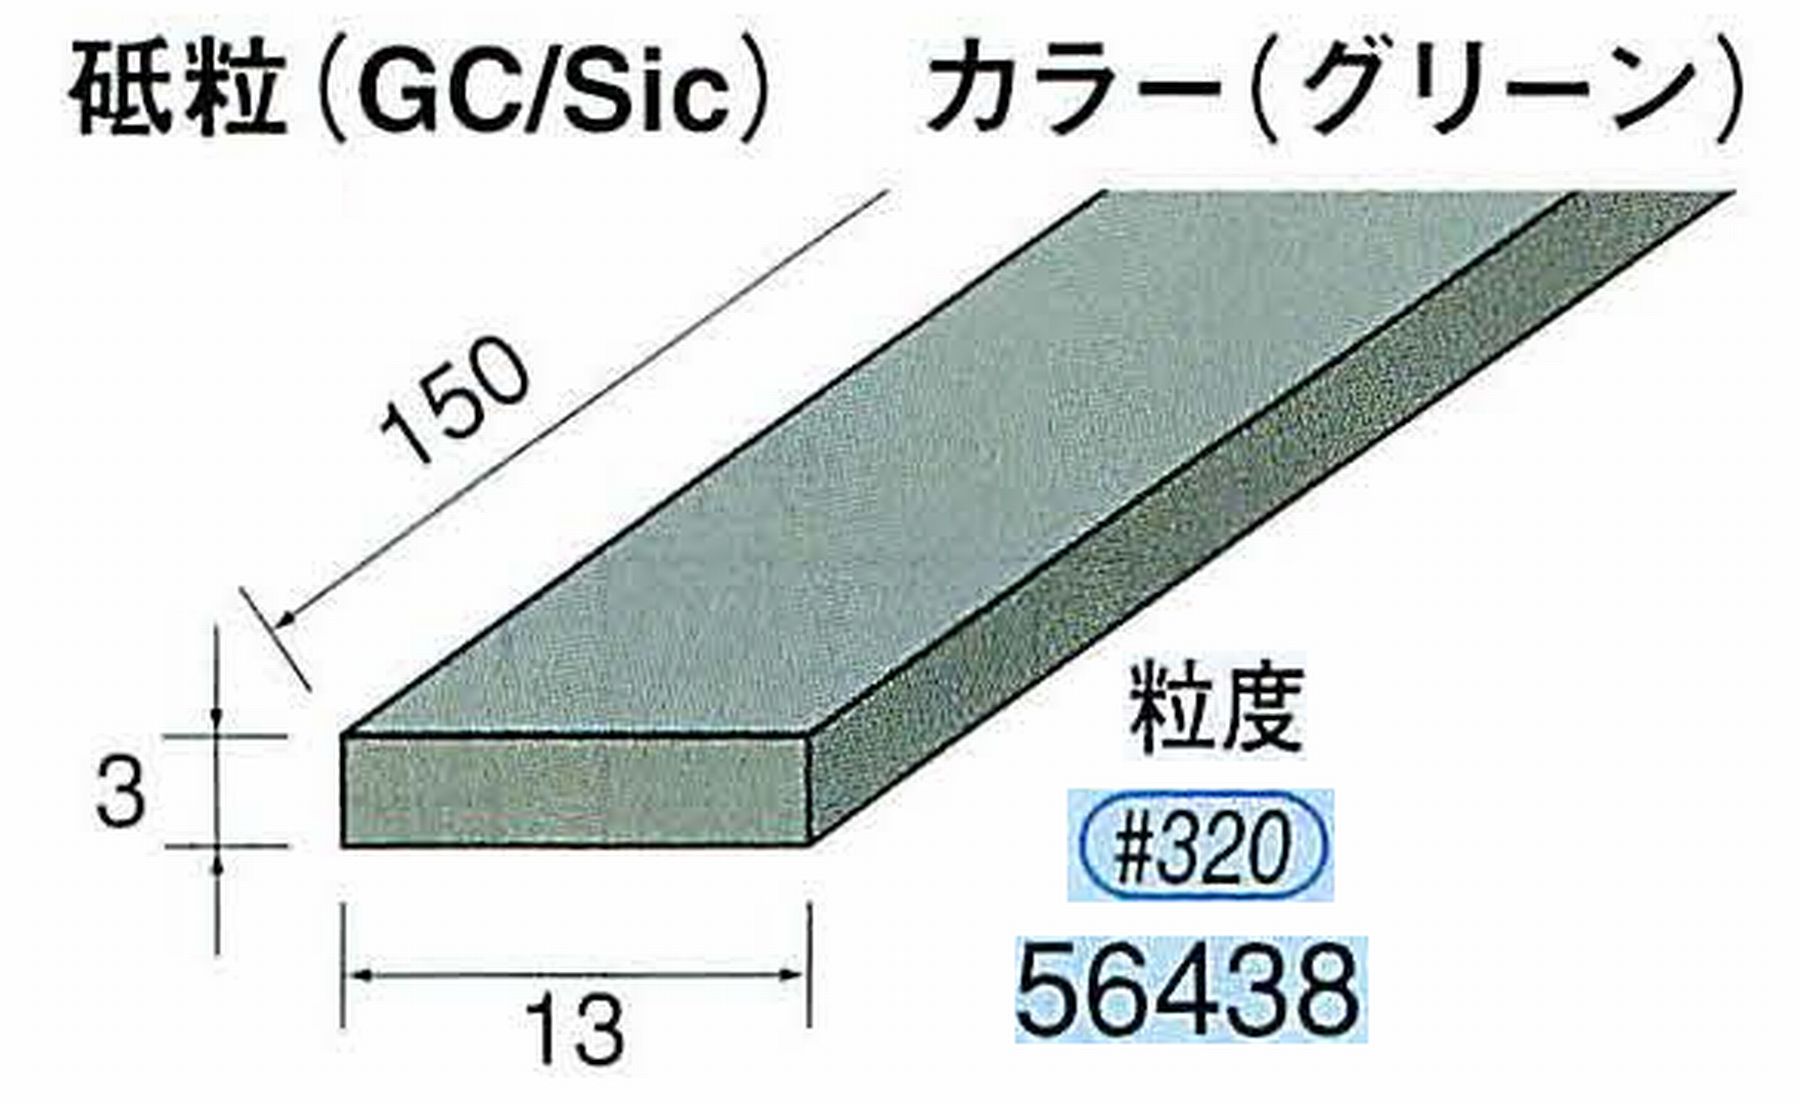 ナカニシ/NAKANISHI スティック砥石 グリーン・フィニッシュシリーズ 砥粒(GC/Sic) 56438